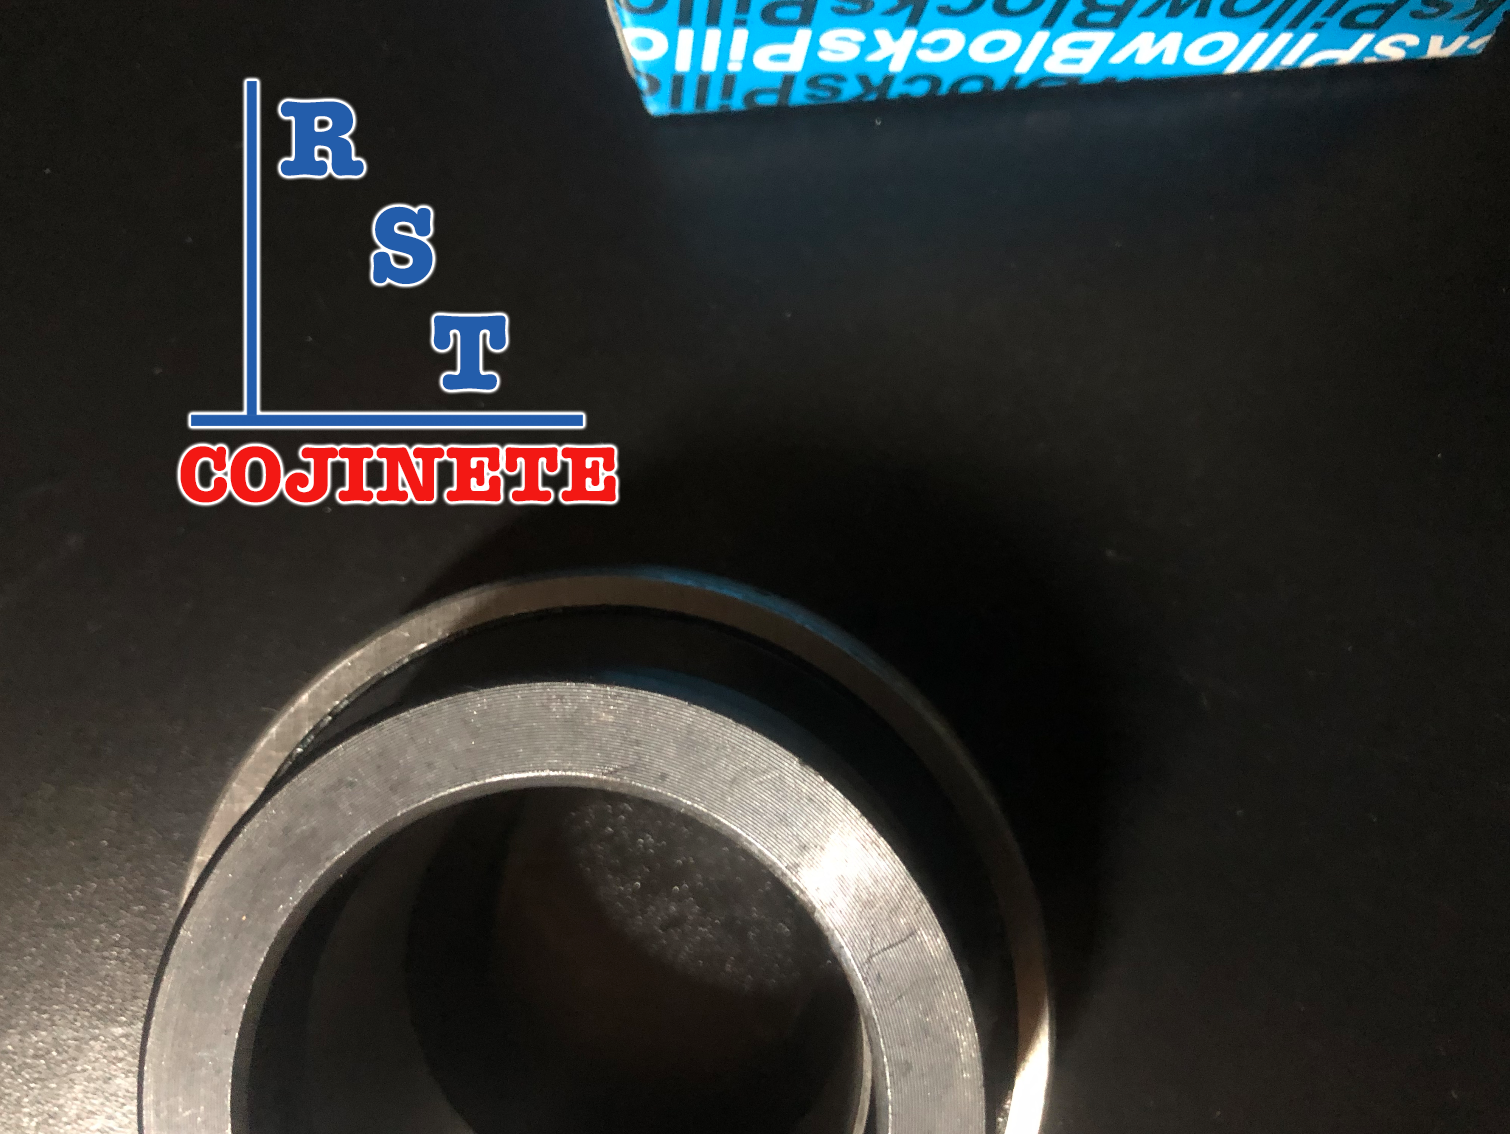 Rodamiento SA210-32 | Cojinete para chumaceras con eje de 2" con respaldo plano y anillo excéntrico